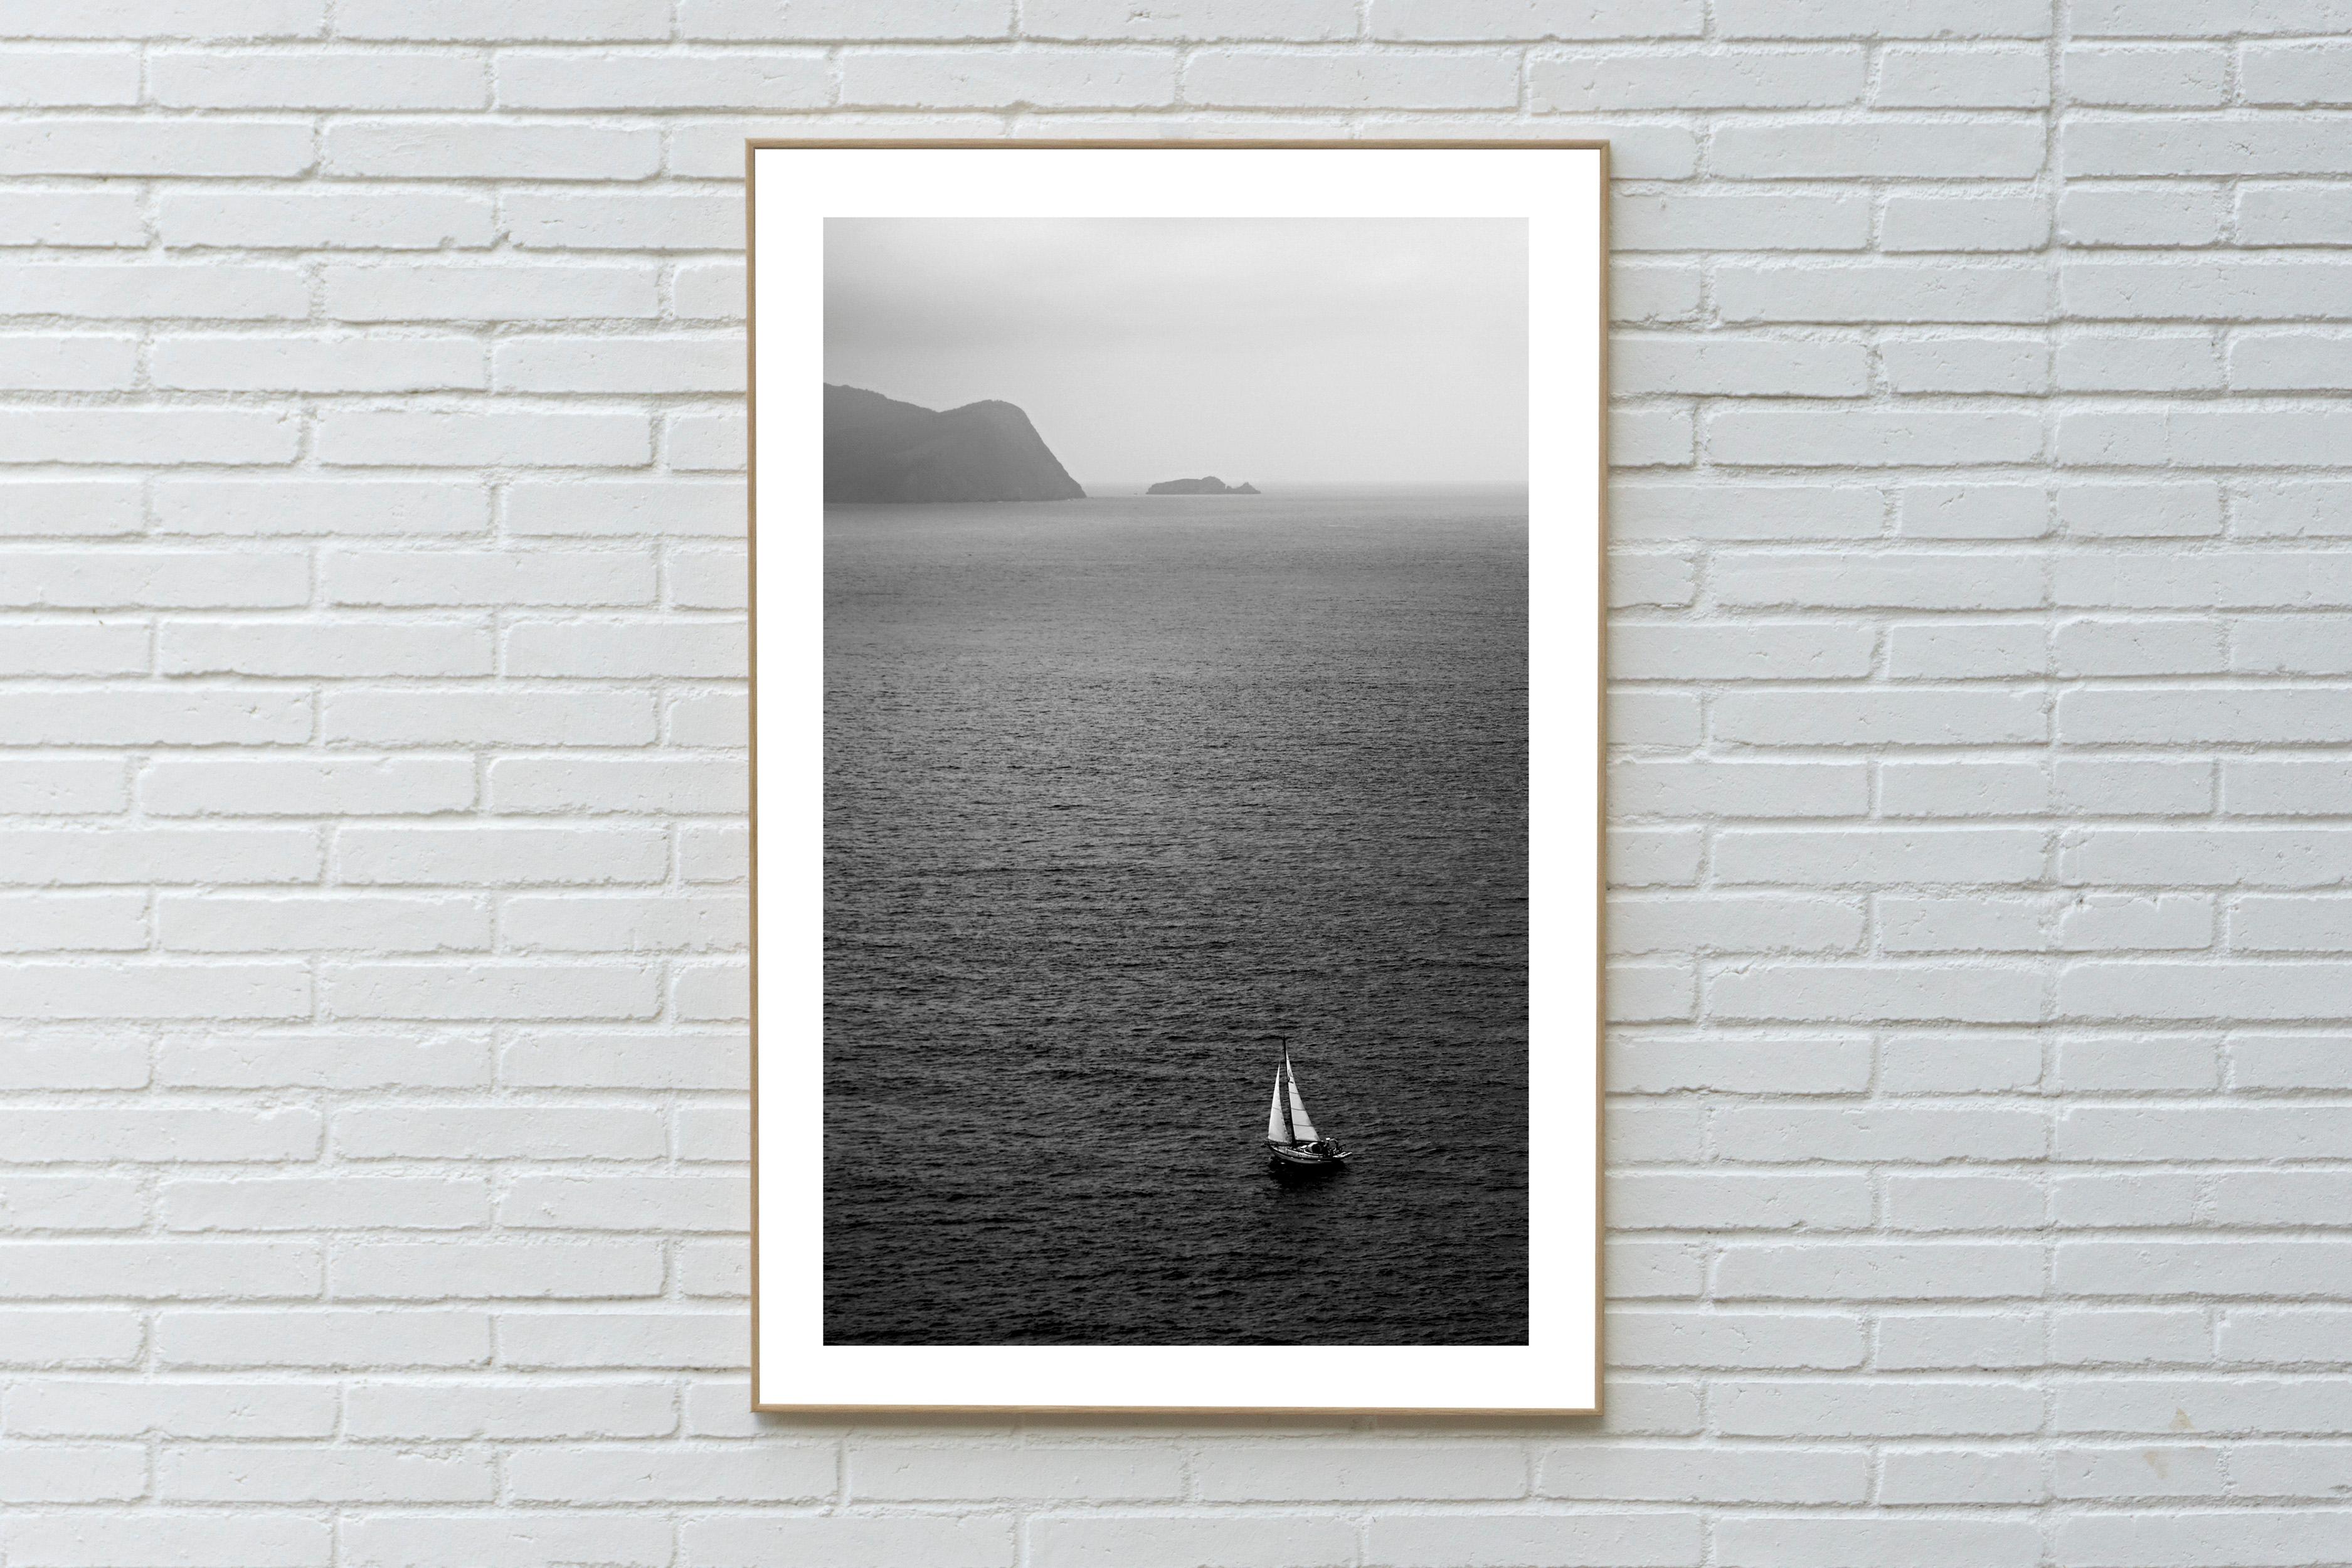  Voyage en voile Misty noir et blanc, paysage marin de la Régatta, côte méditerranéenne - Photograph de Kind of Cyan